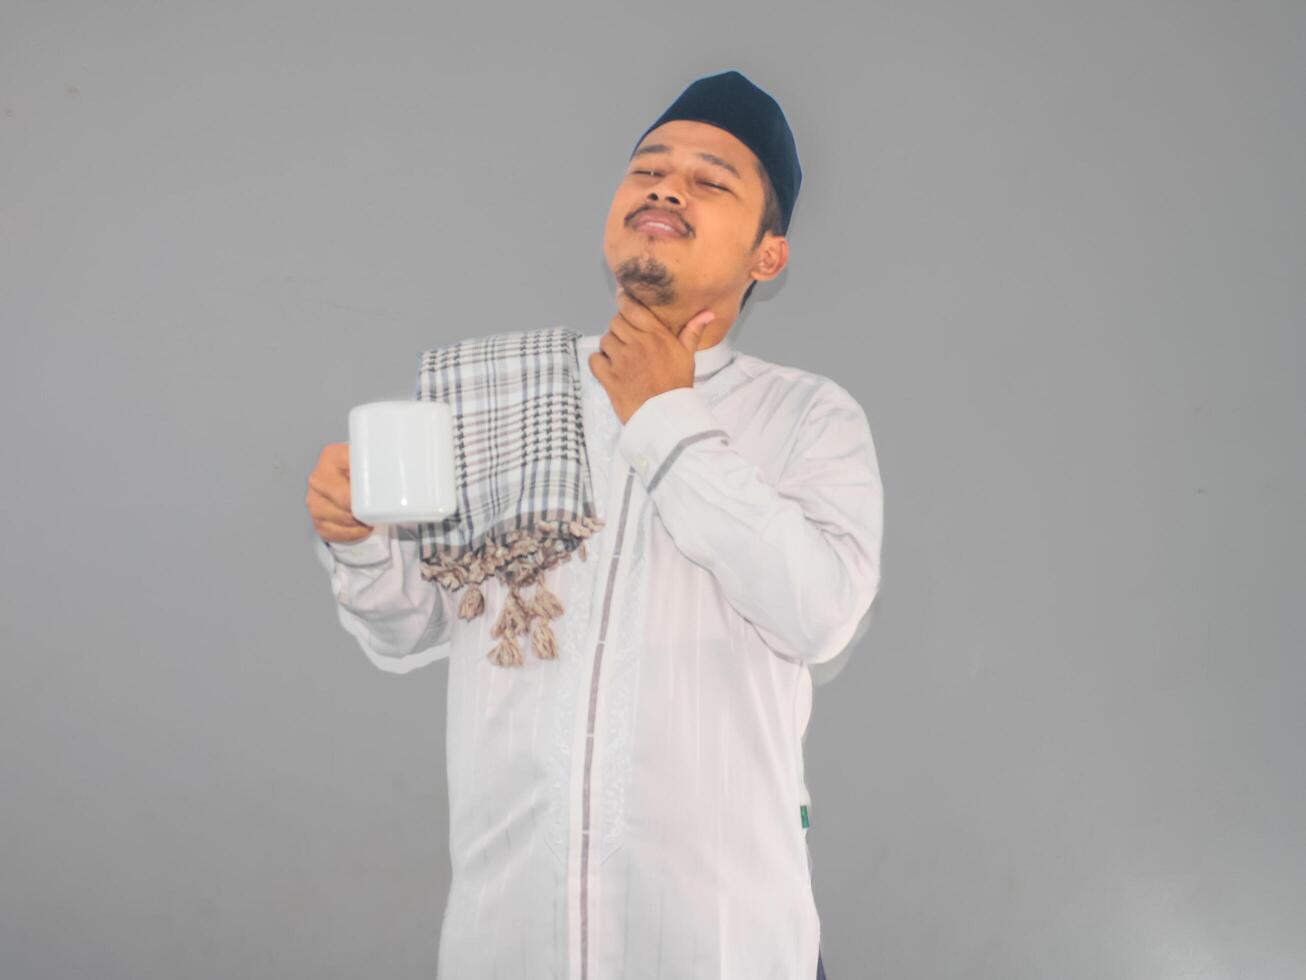 musulman homme en portant une chaud boisson et émouvant le sien gorge montrant soulagé expression photo